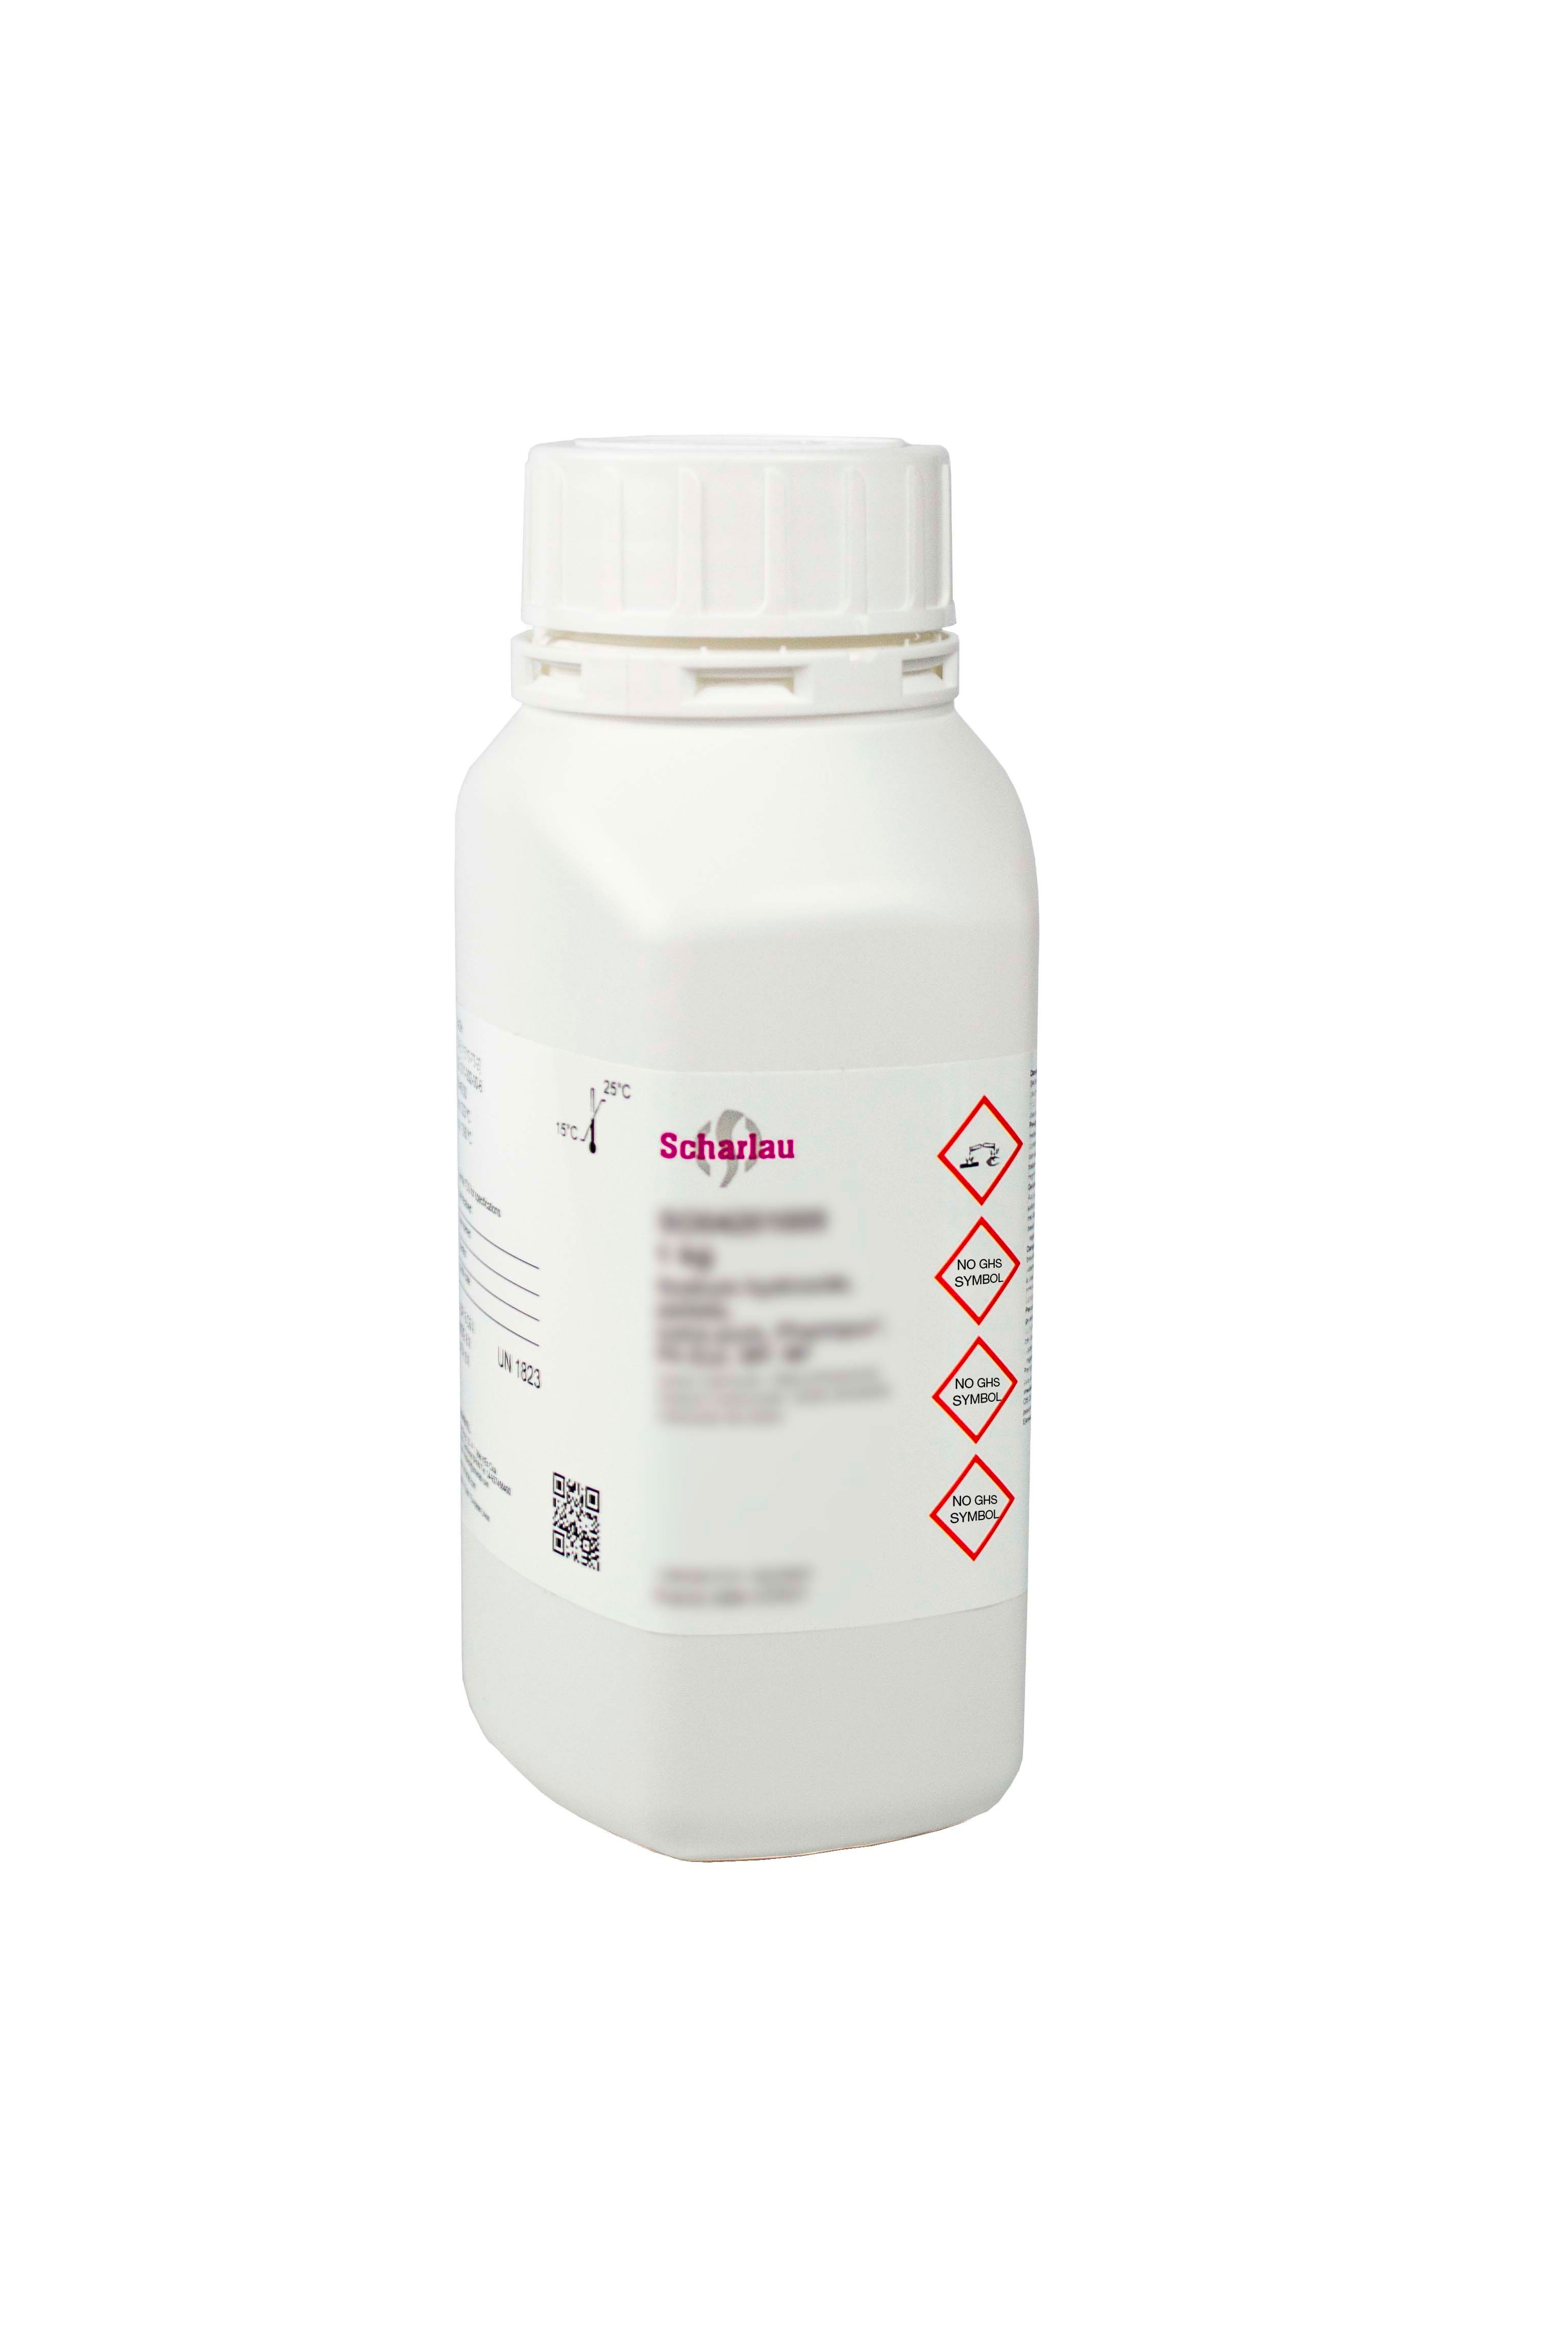 Sodio L-glutamato monohidrato, Pharmpur®, NF